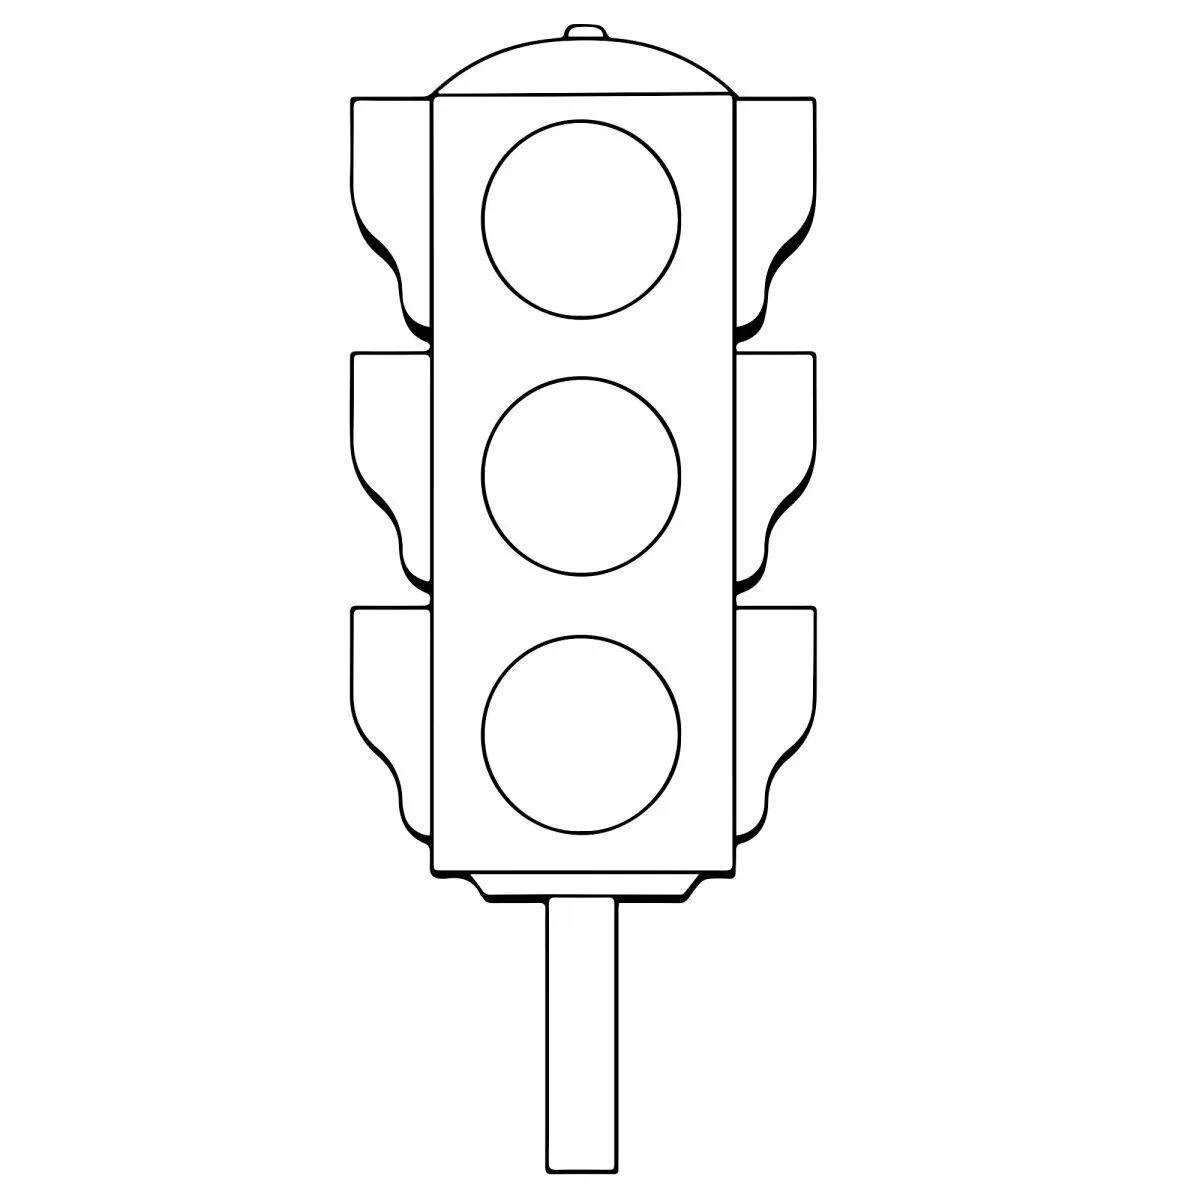 Sweet traffic light pattern